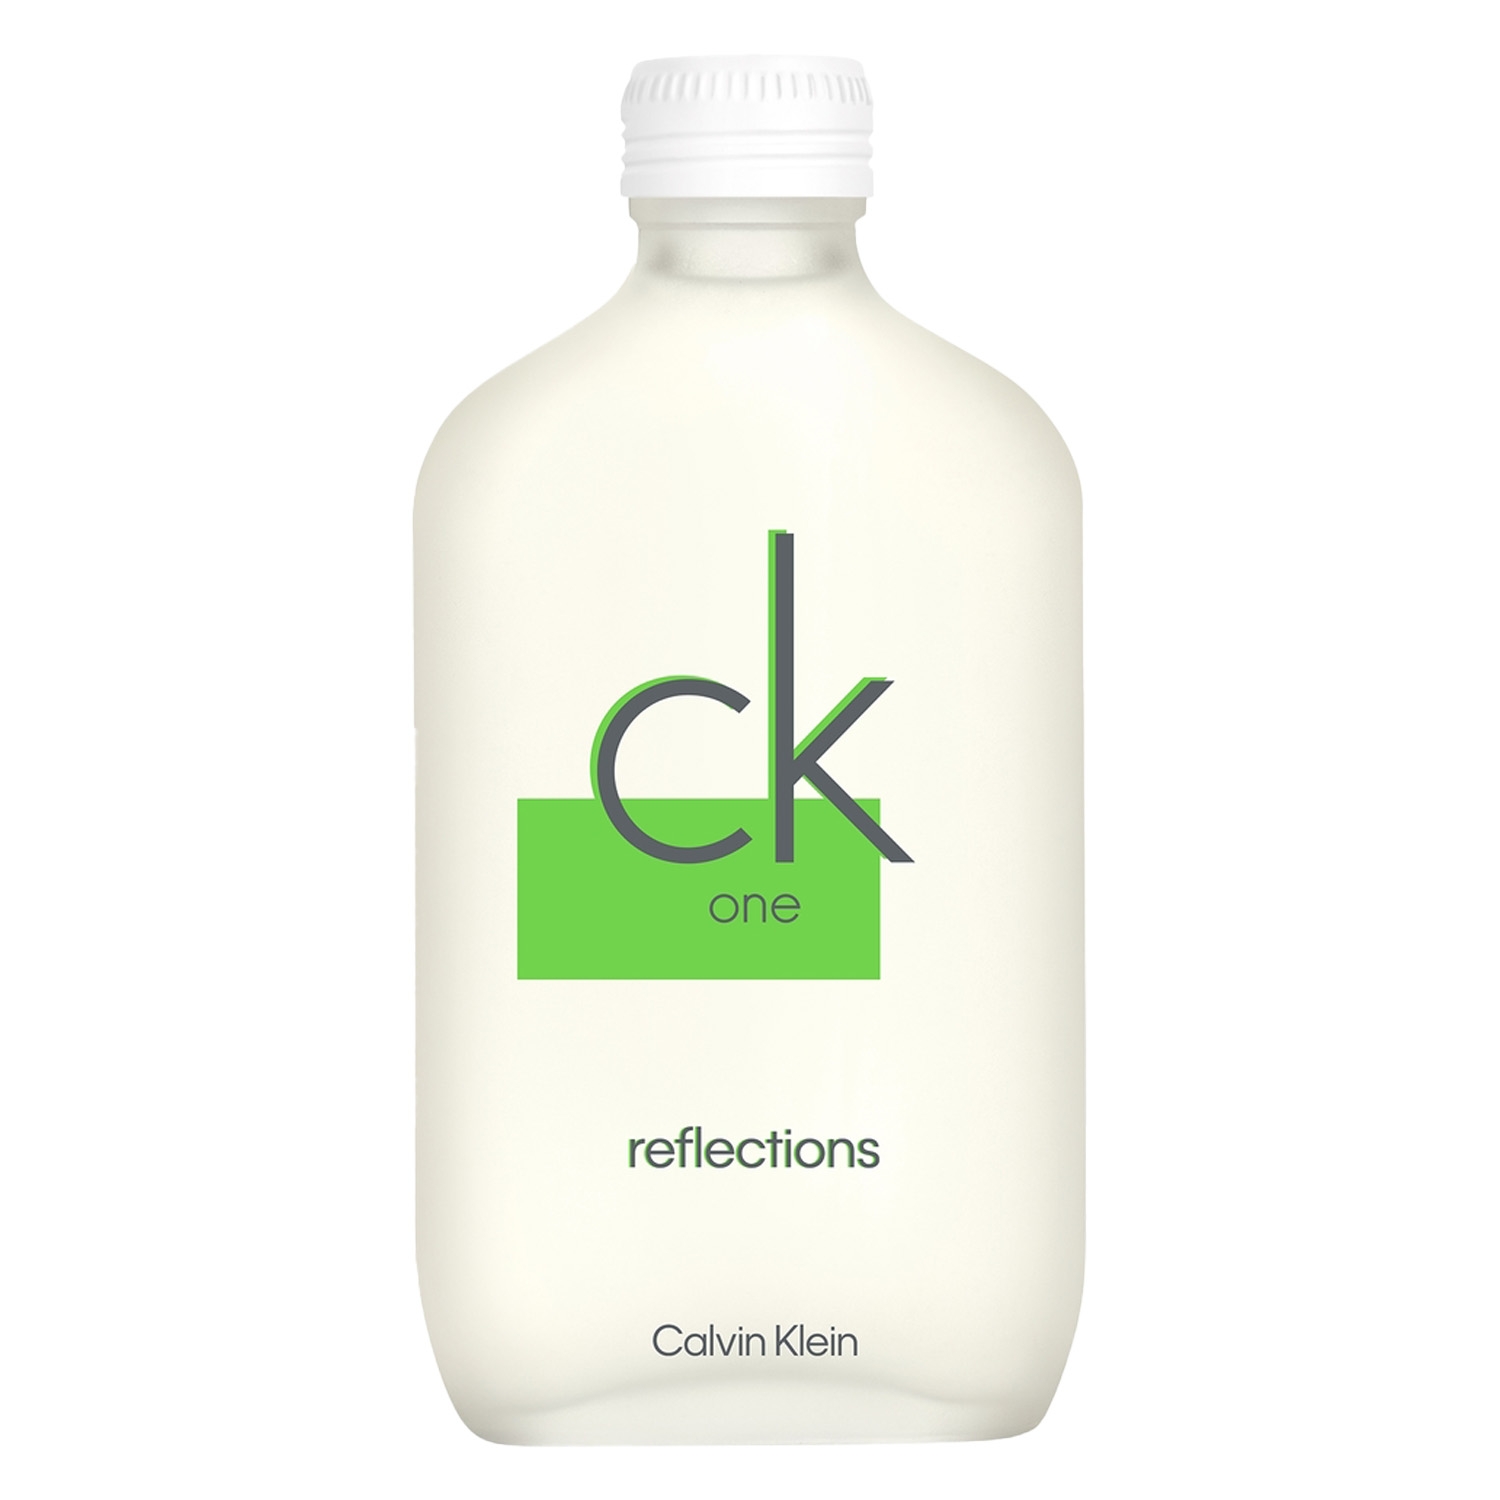 Produktbild von CK One - Reflections Eau de Toilette